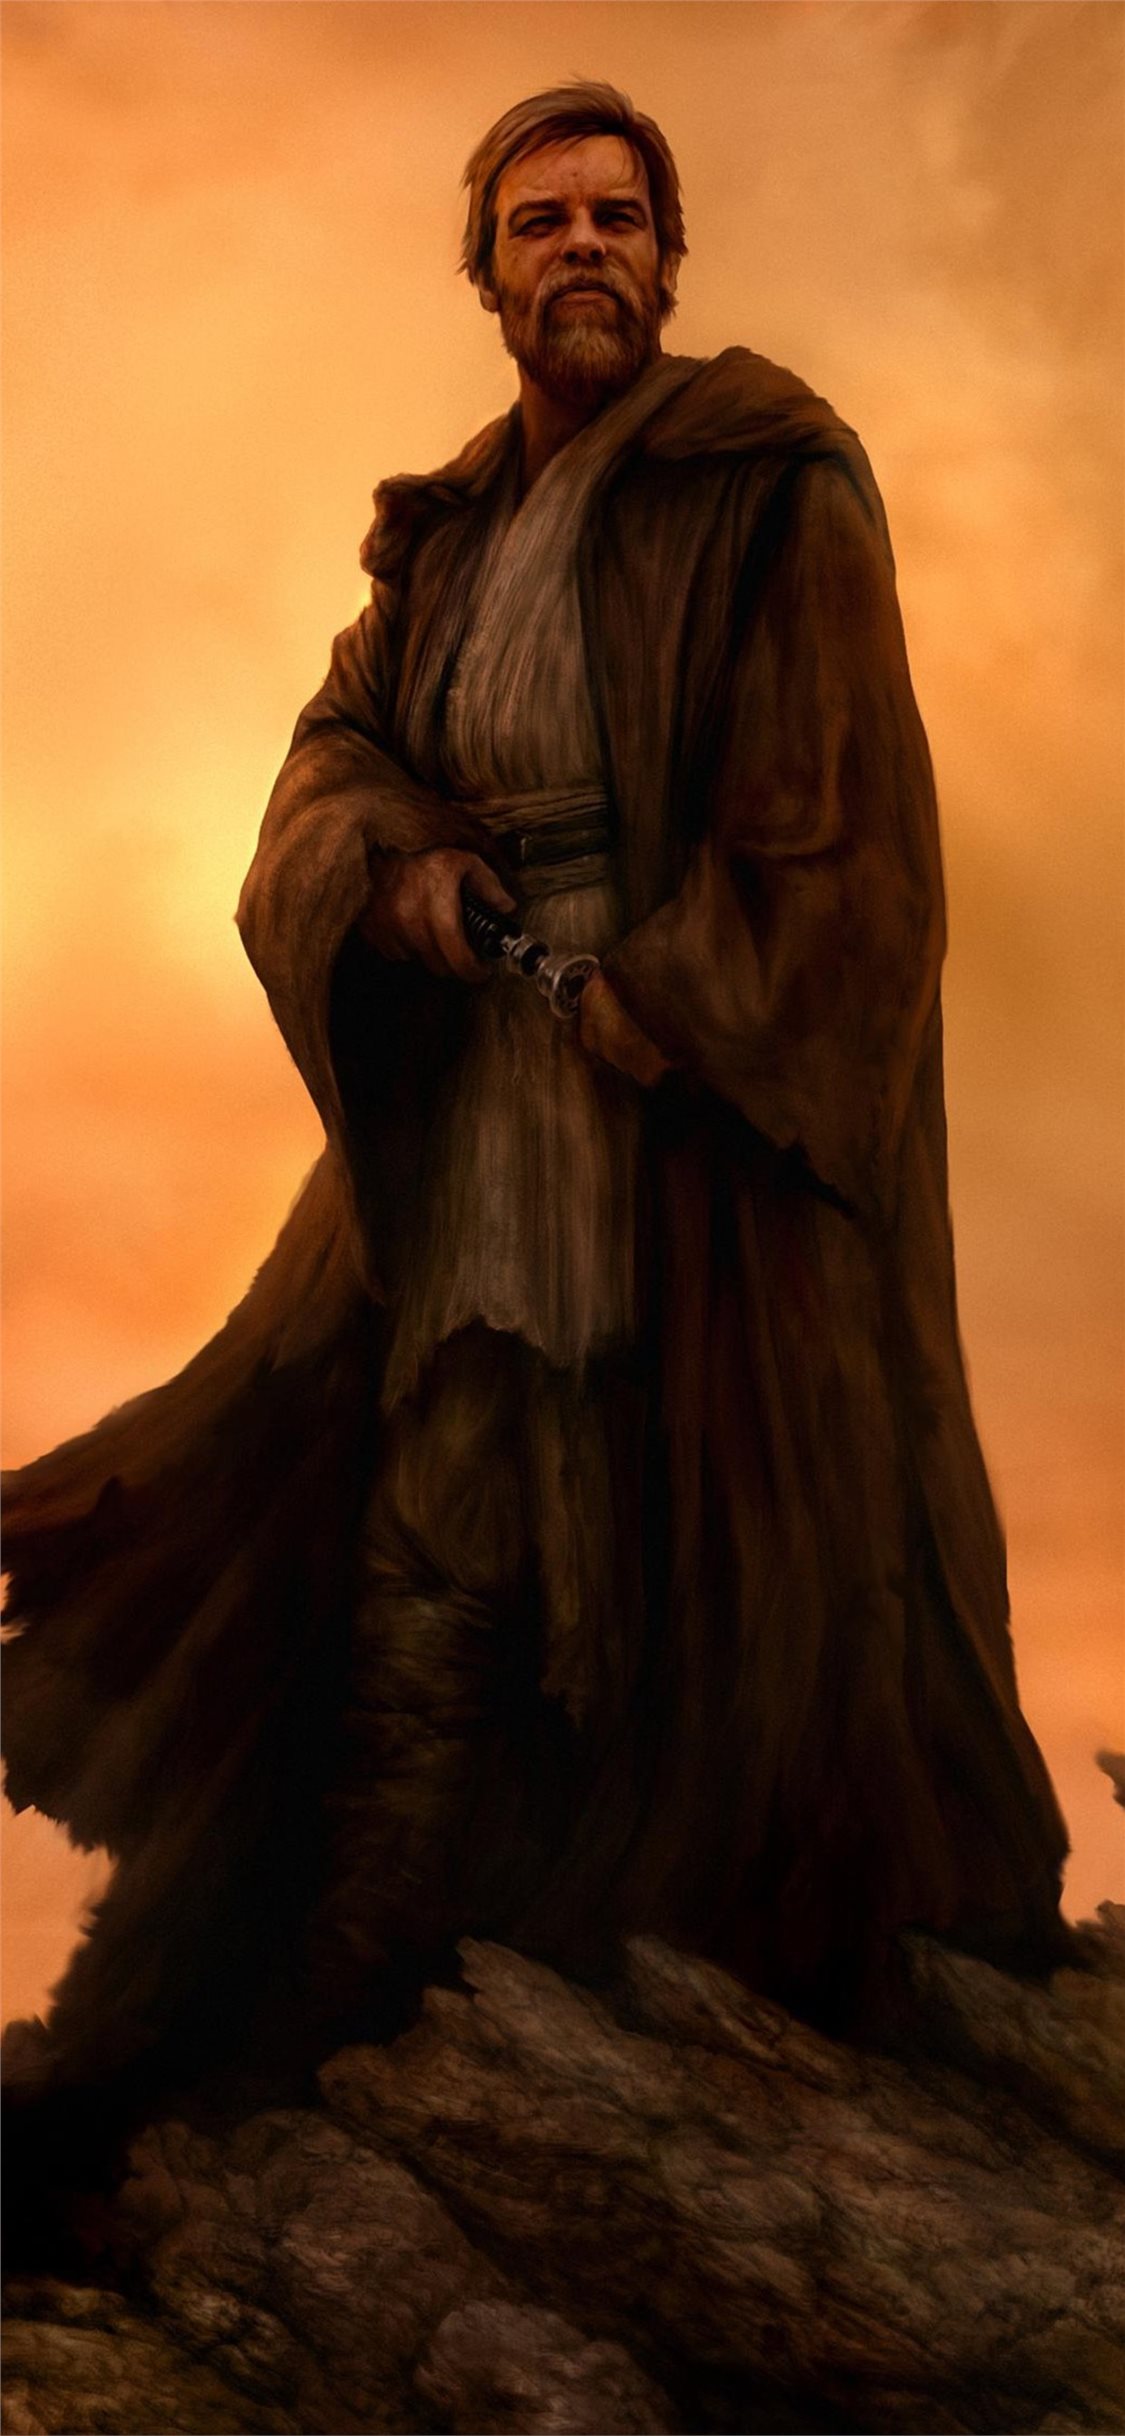 Obi Wan Kenobi Wallpaper Iphone - HD Wallpaper 